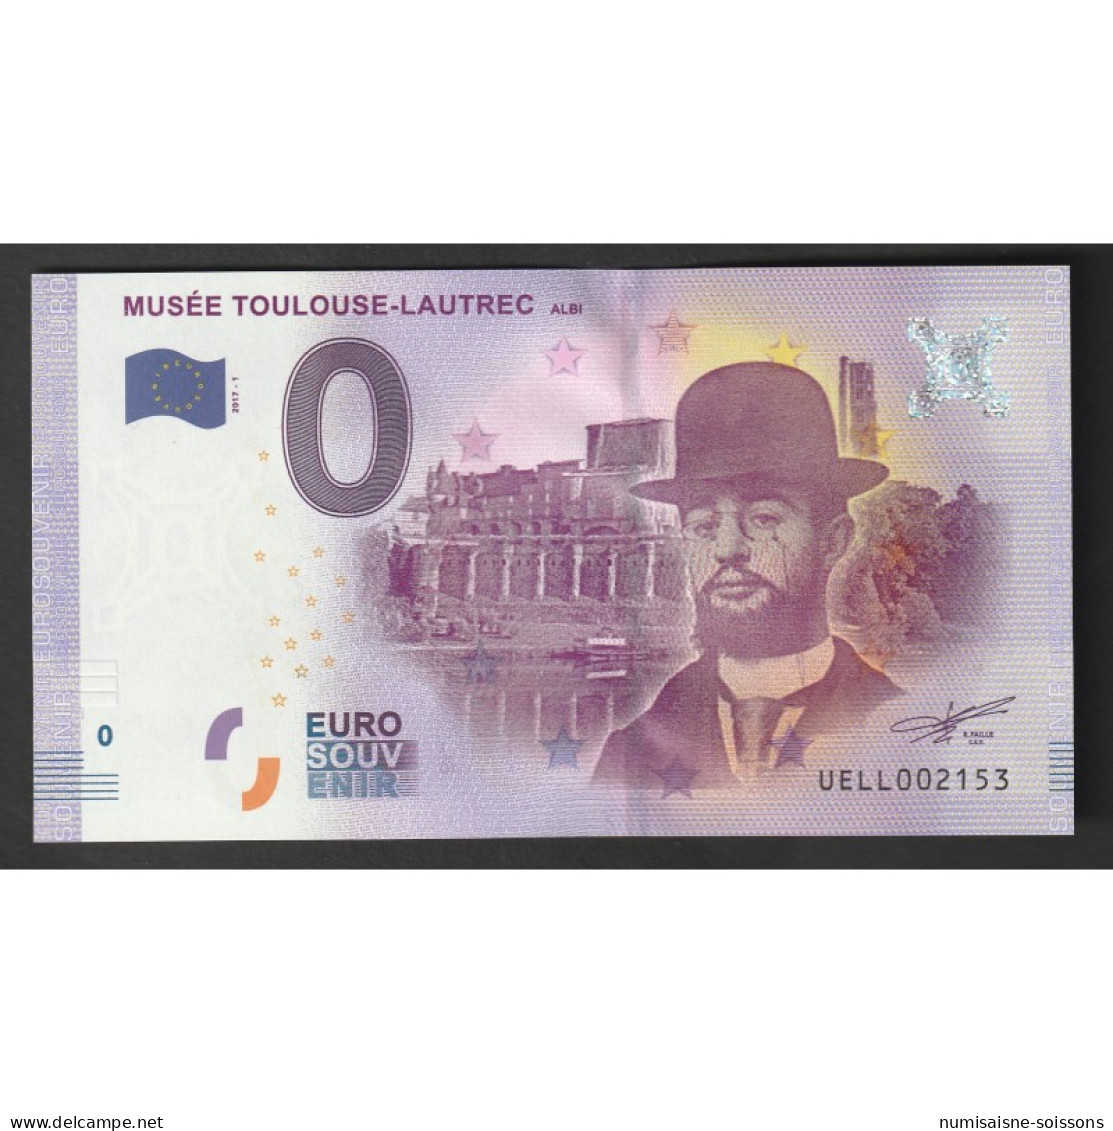 FRANCE - 81000 - ALBI - MUSÉE TOULOUSE LAUTREC - 2017-1 - Privatentwürfe